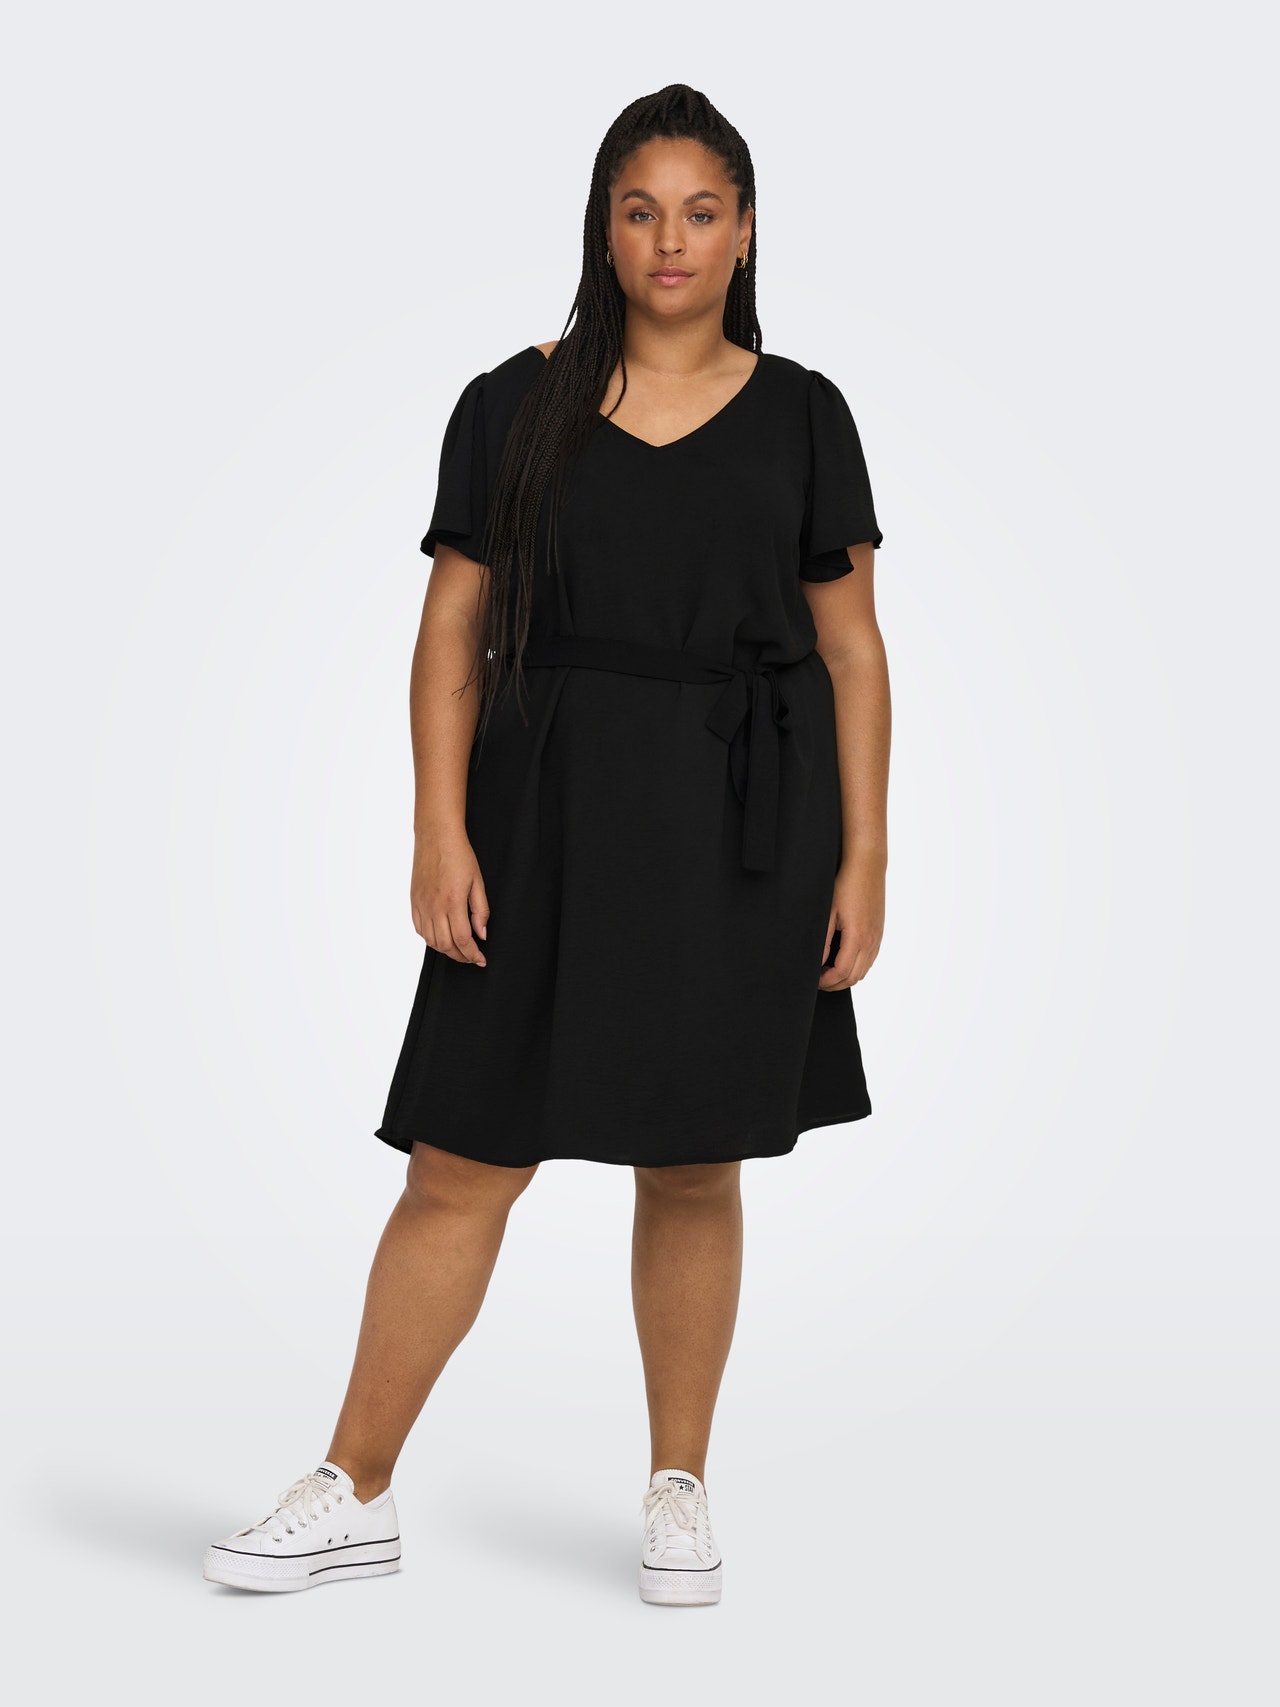 13 Plus Size Little Black Dresses Must Have Under $100.00!